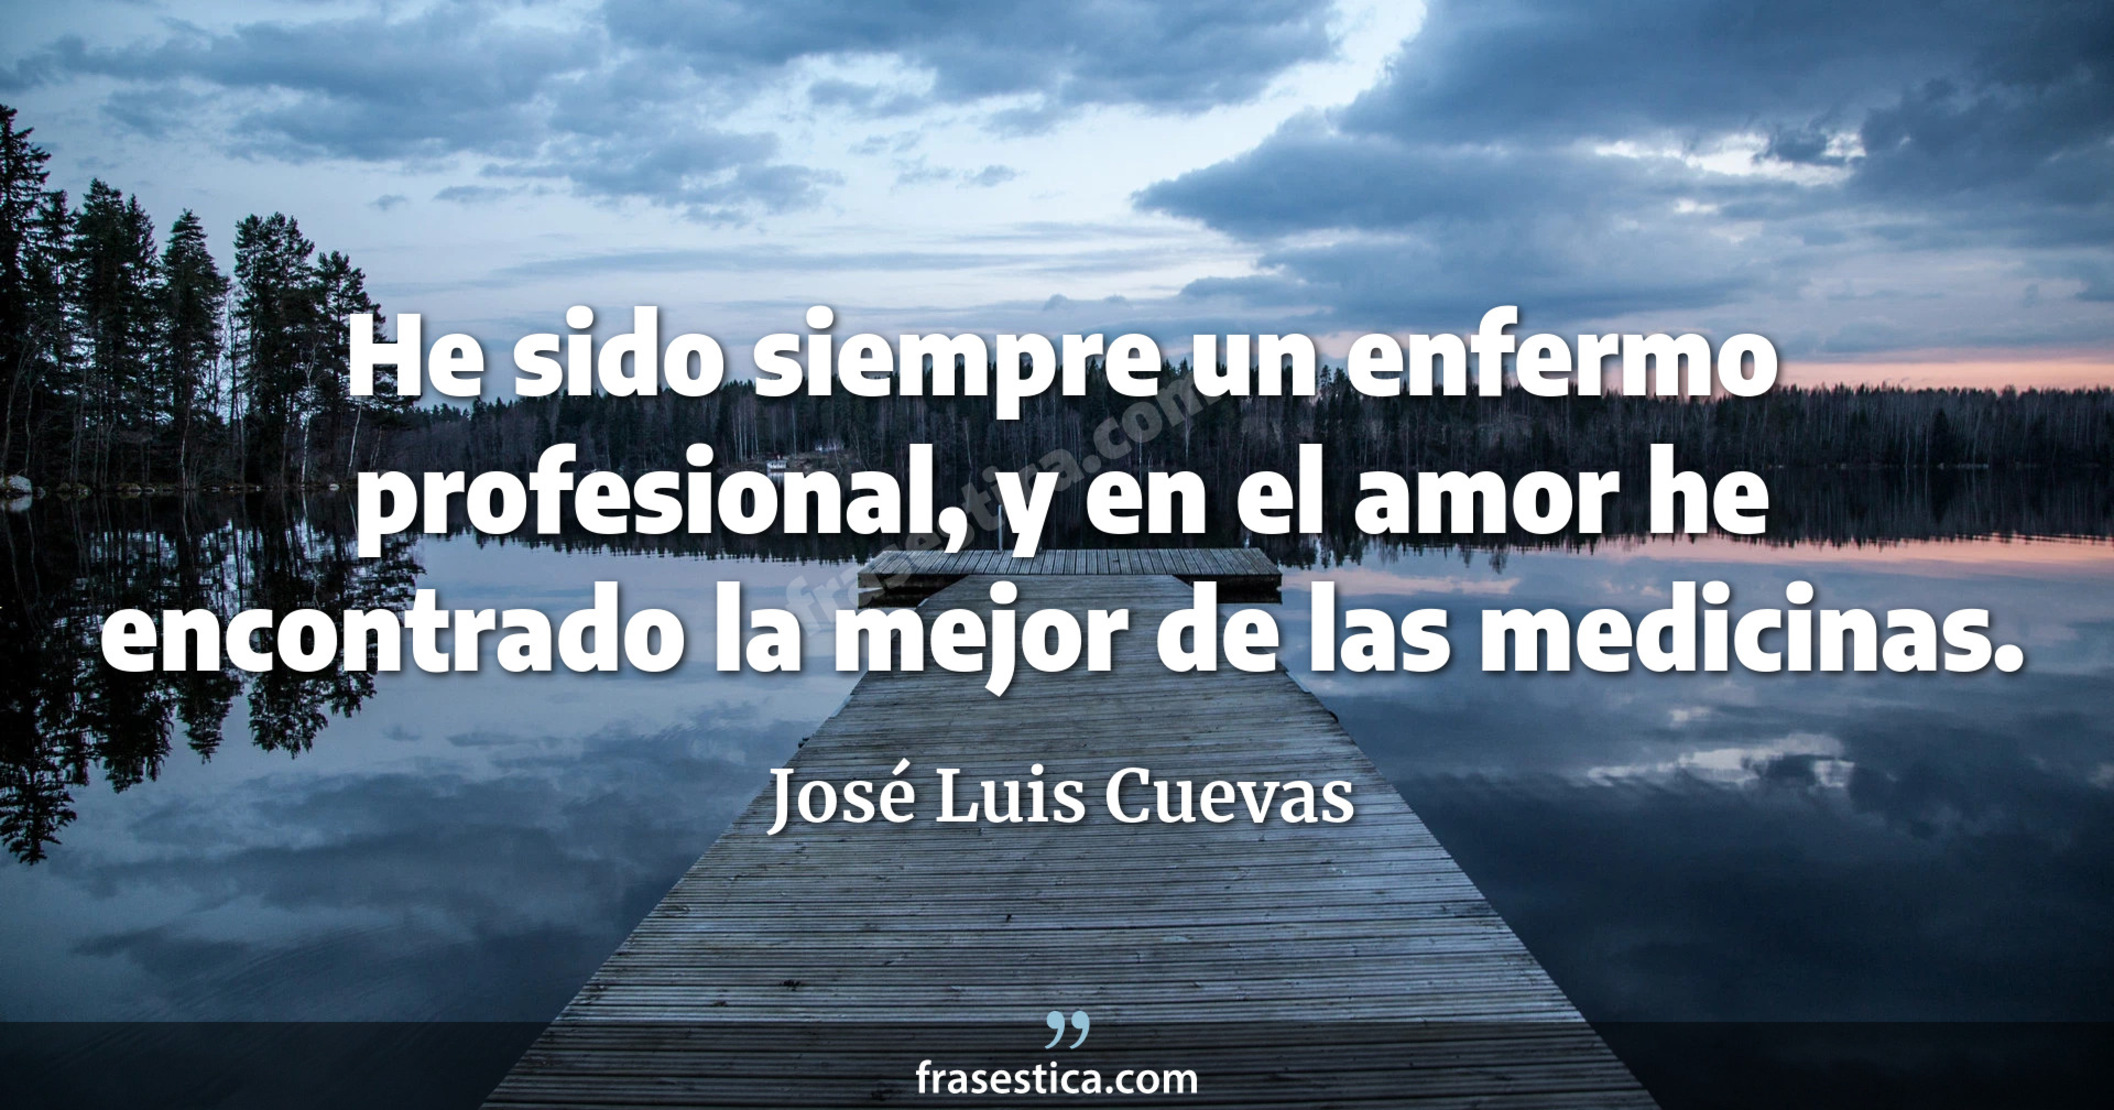 He sido siempre un enfermo profesional, y en el amor he encontrado la mejor de las medicinas. - José Luis Cuevas